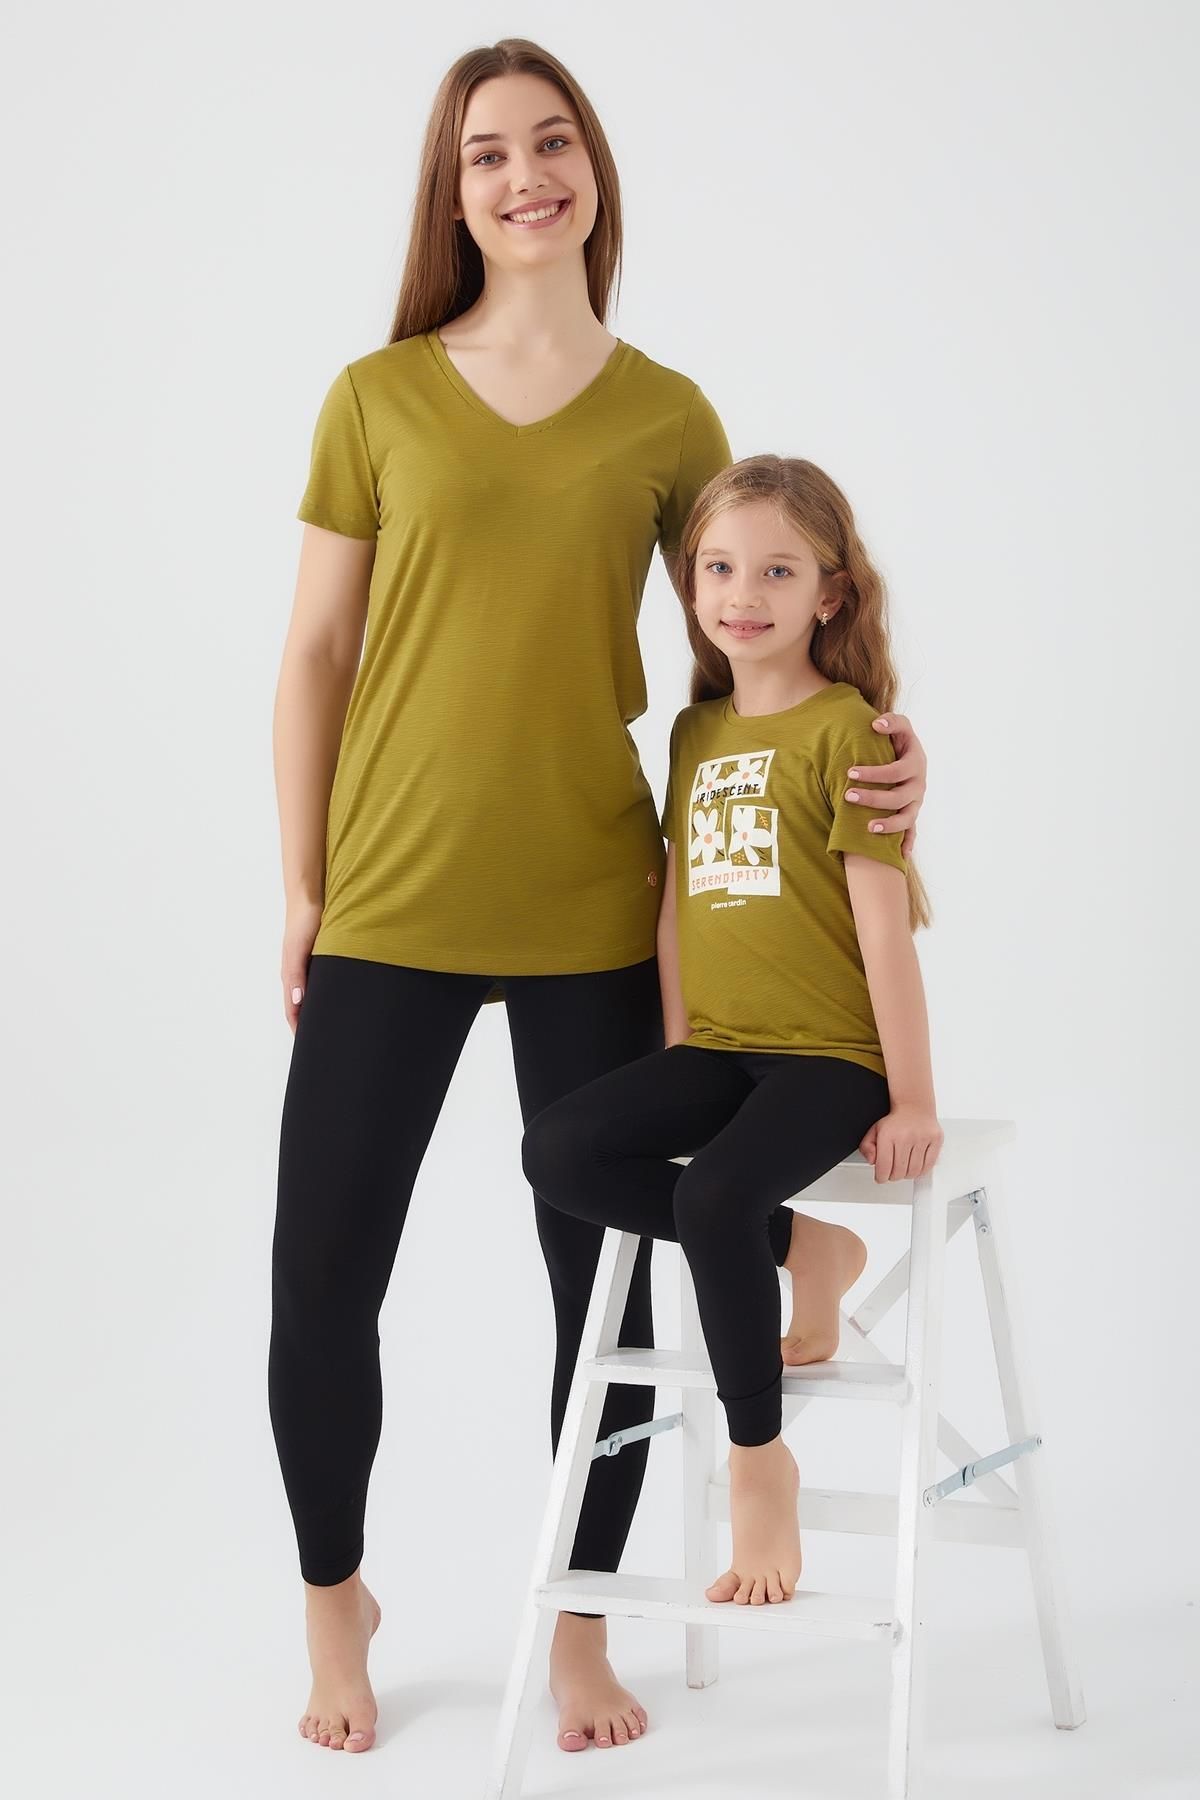 Pierre Cardin Anne kız Tayt t-shirt takım (ayrı ayrı fiyatlandırılır)